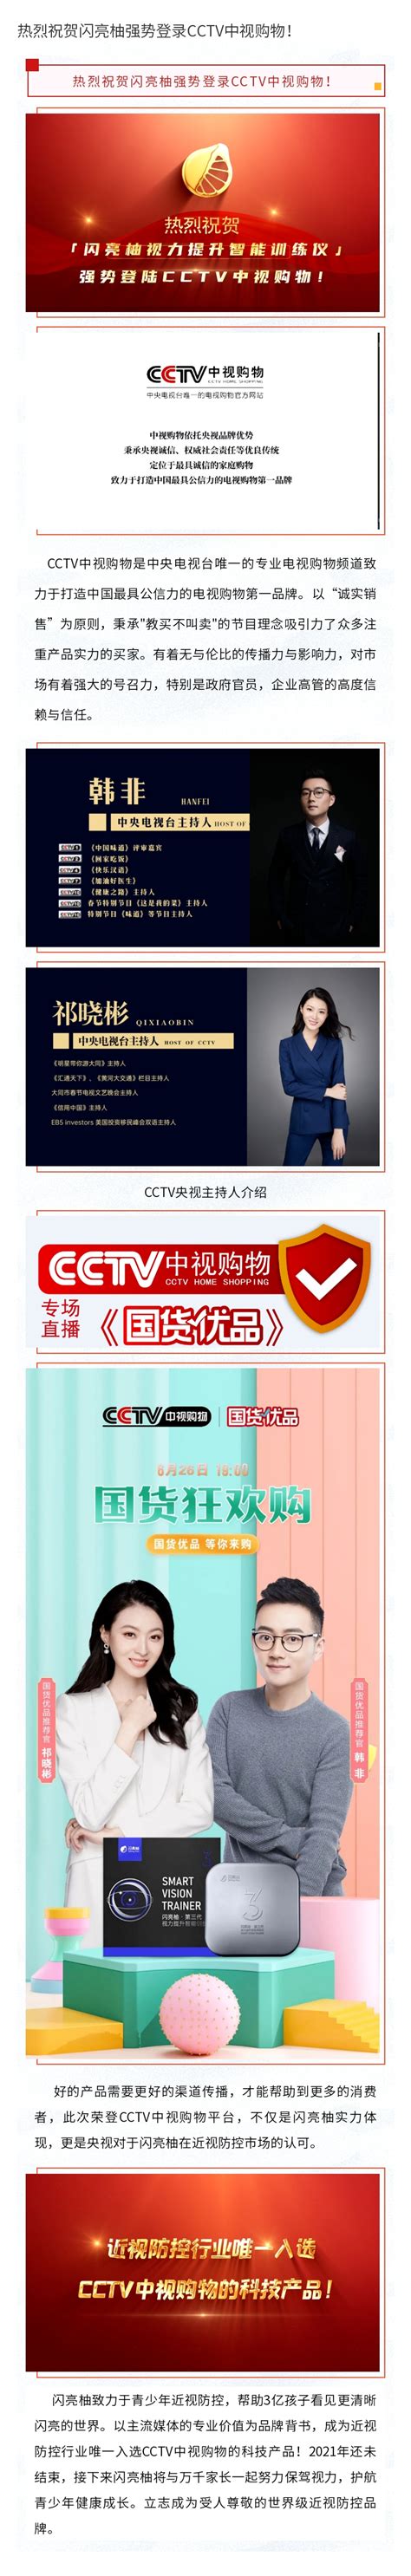 海合龙祥担任CCTV中视购物频道《灿烂中国》栏目主持人 - 热点聚焦 - 爱心中国网